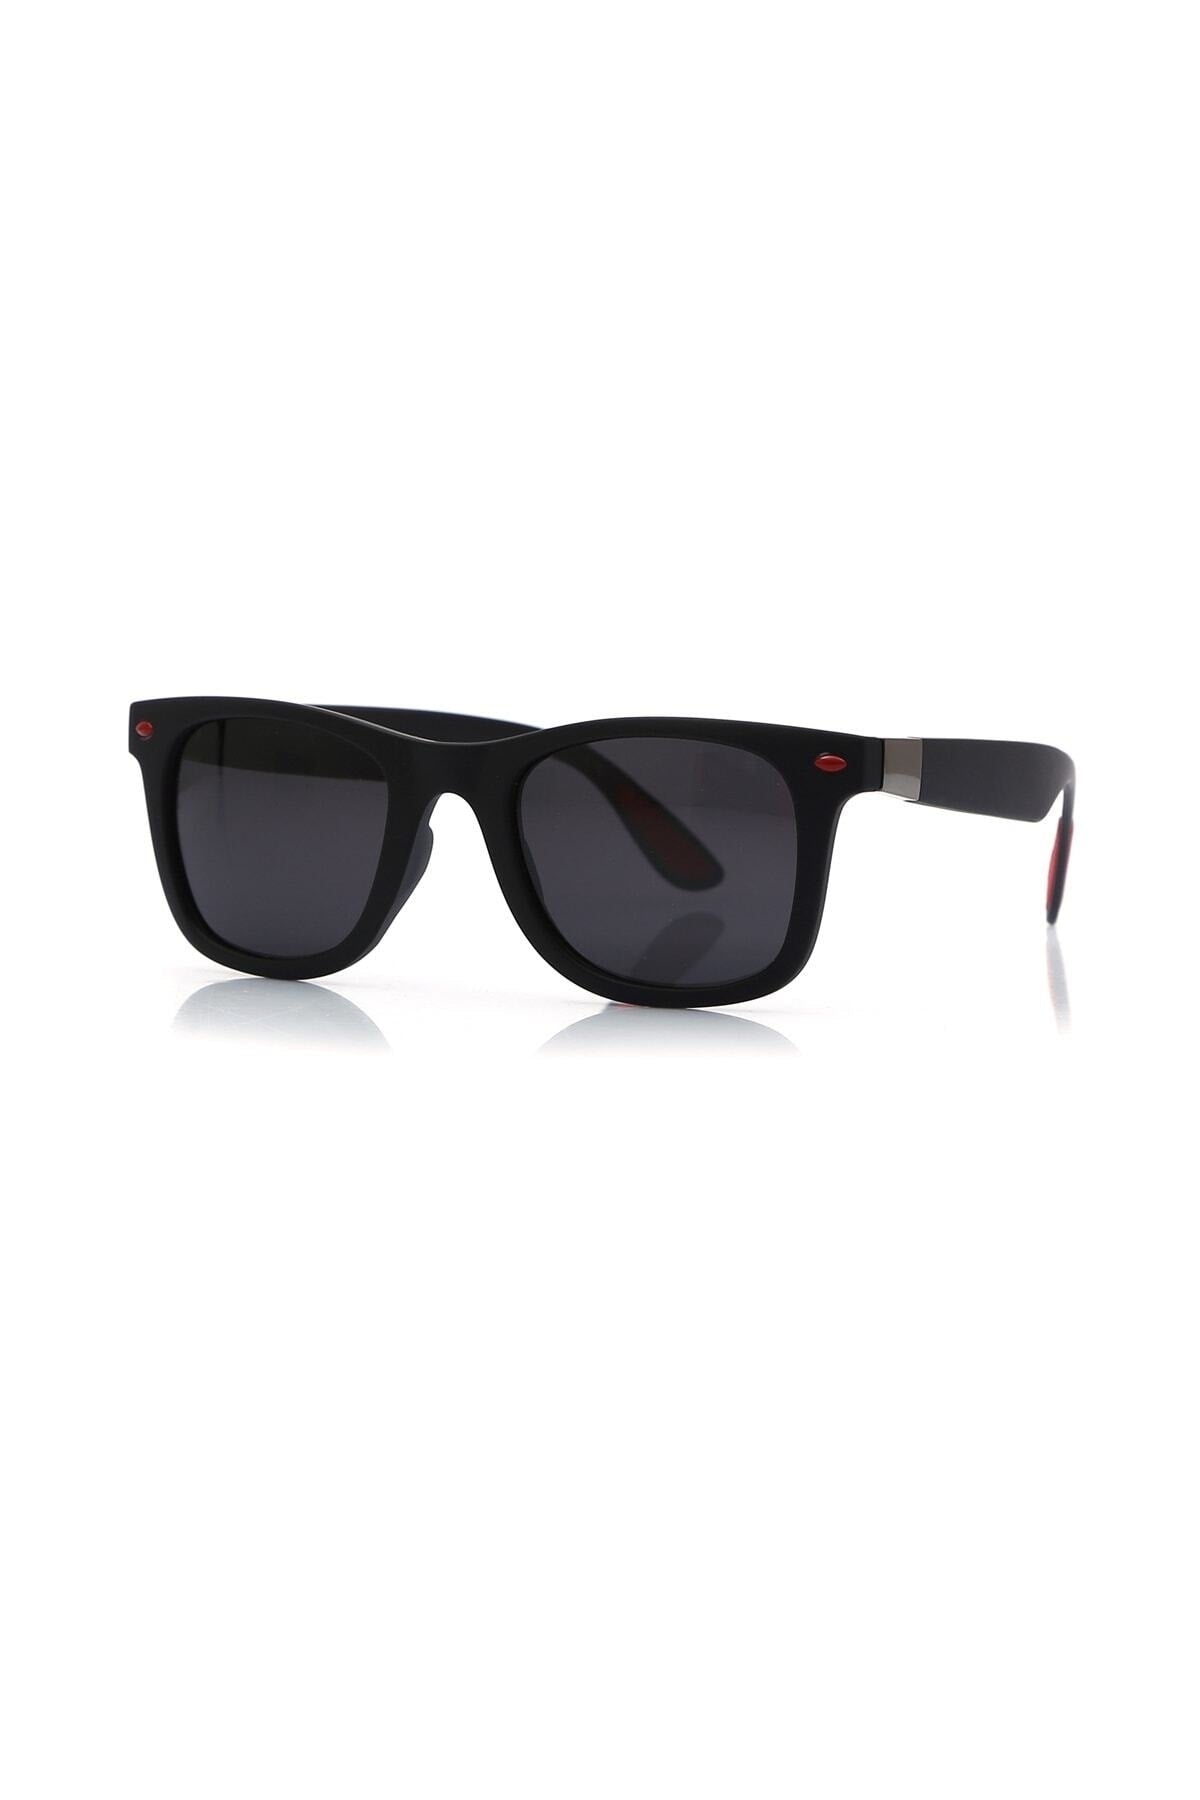 Unisex Sunglasses Bh 6002-11 C101